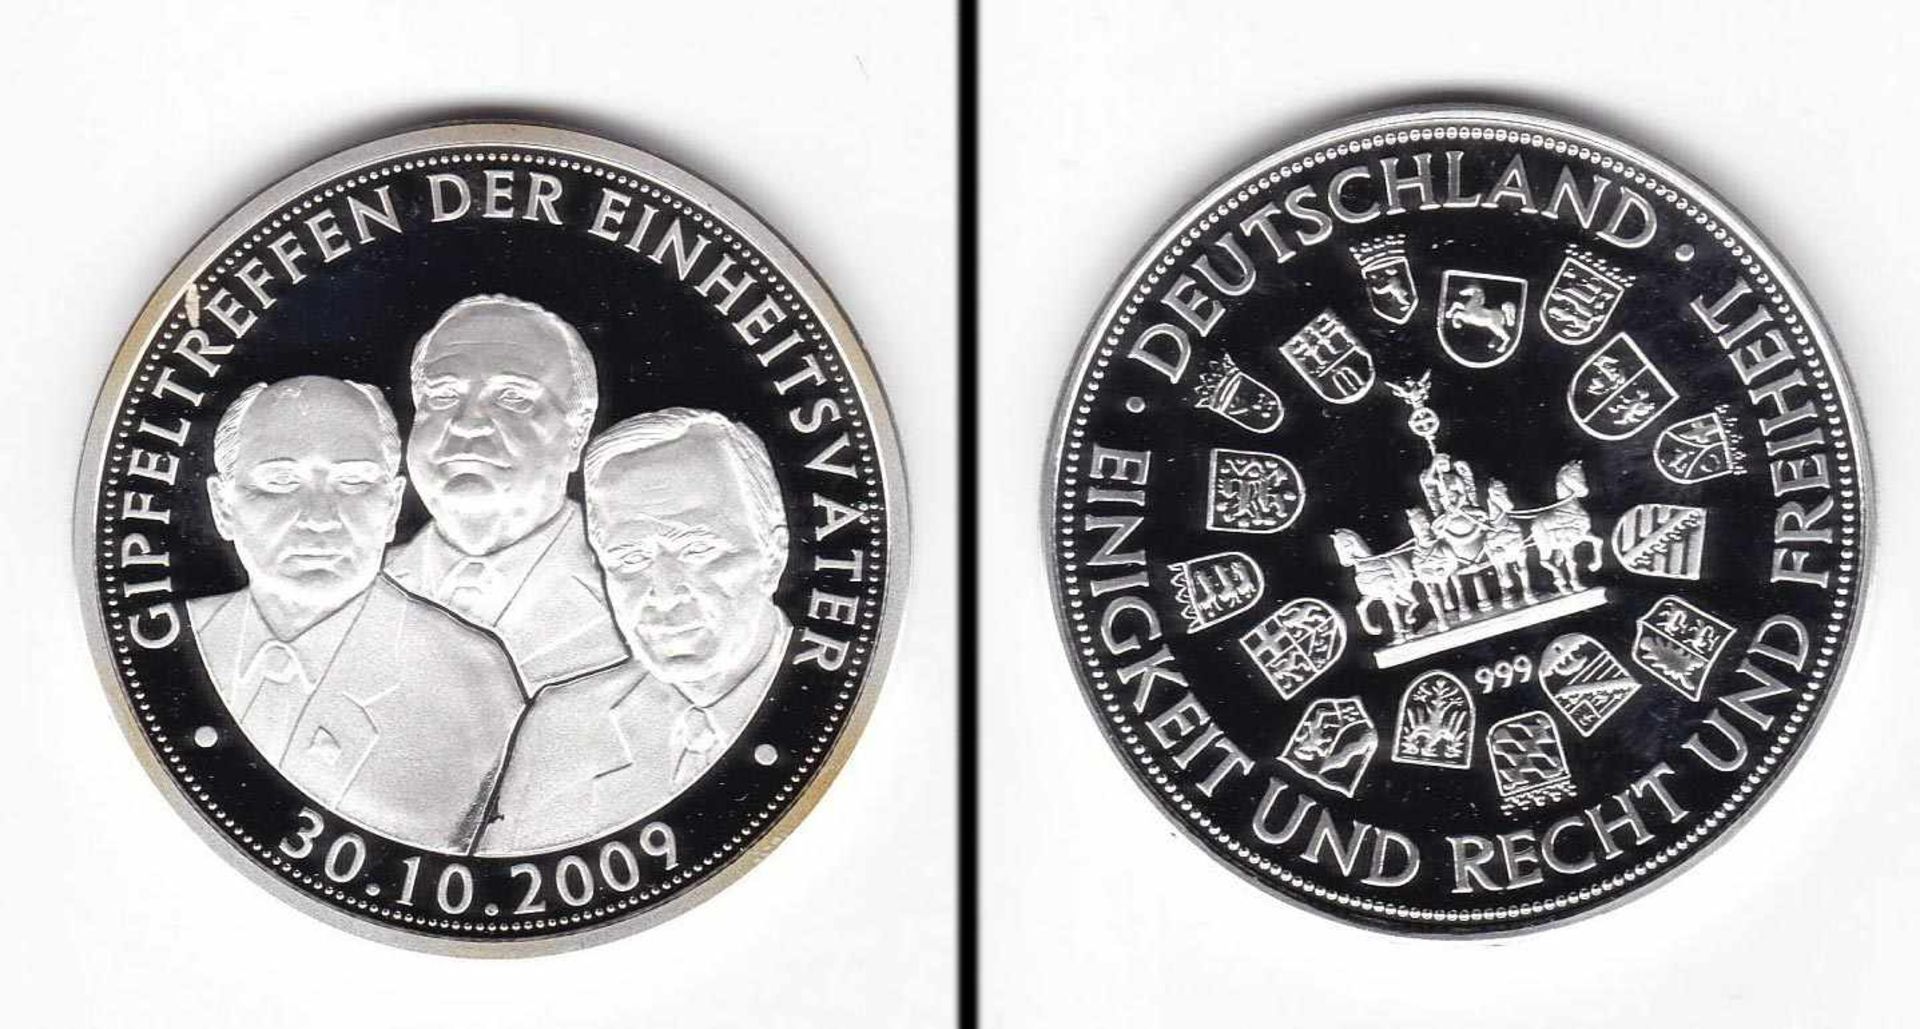 Medaille BRD 2009, Gipfeltreffen der Einheitväter, 18,9g Feinsilber, PP